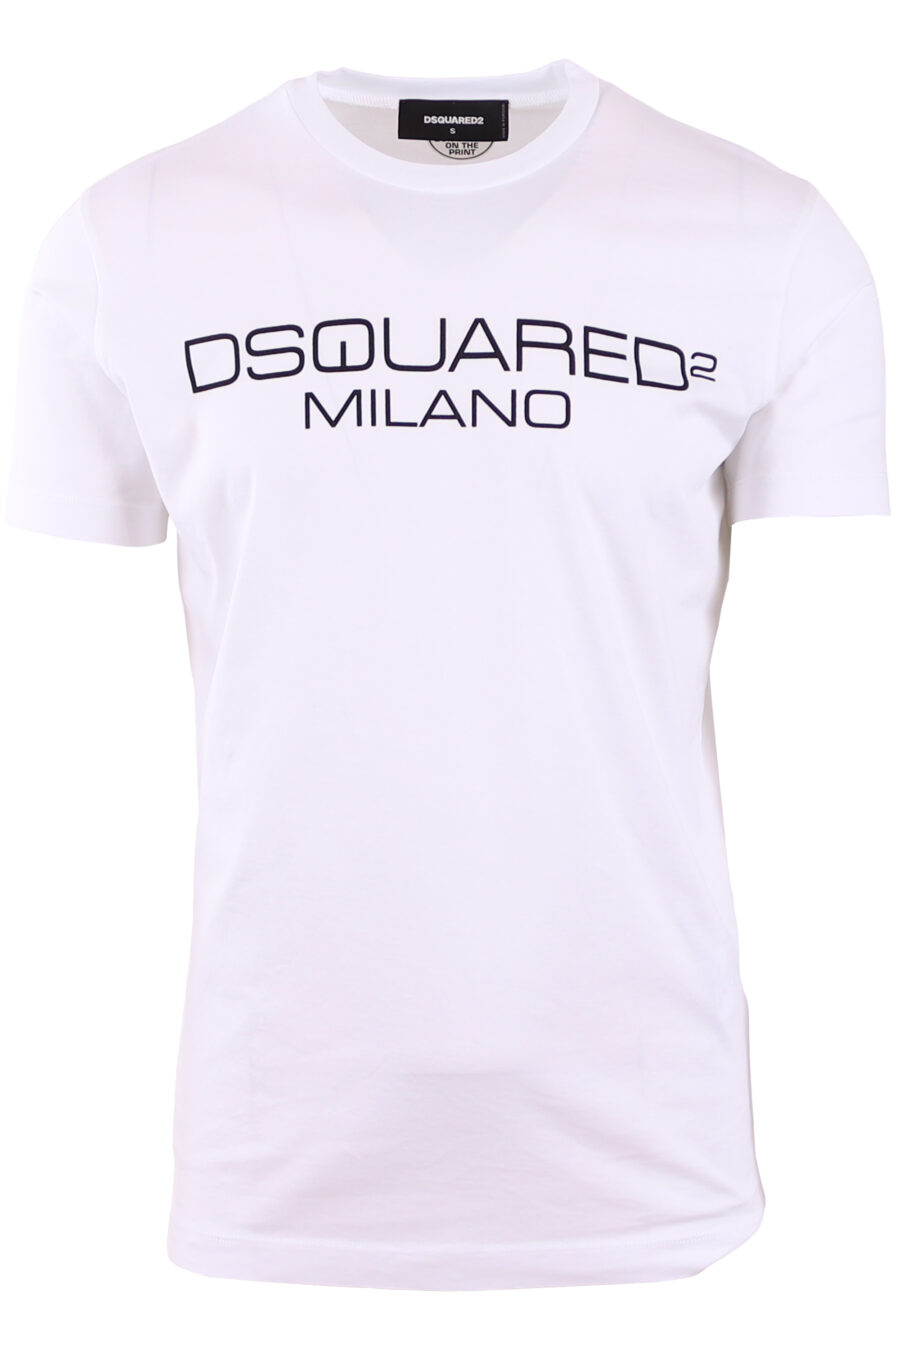 maxilogo T-shirt blanc "dsquared2 milano" - IMG 3569 1